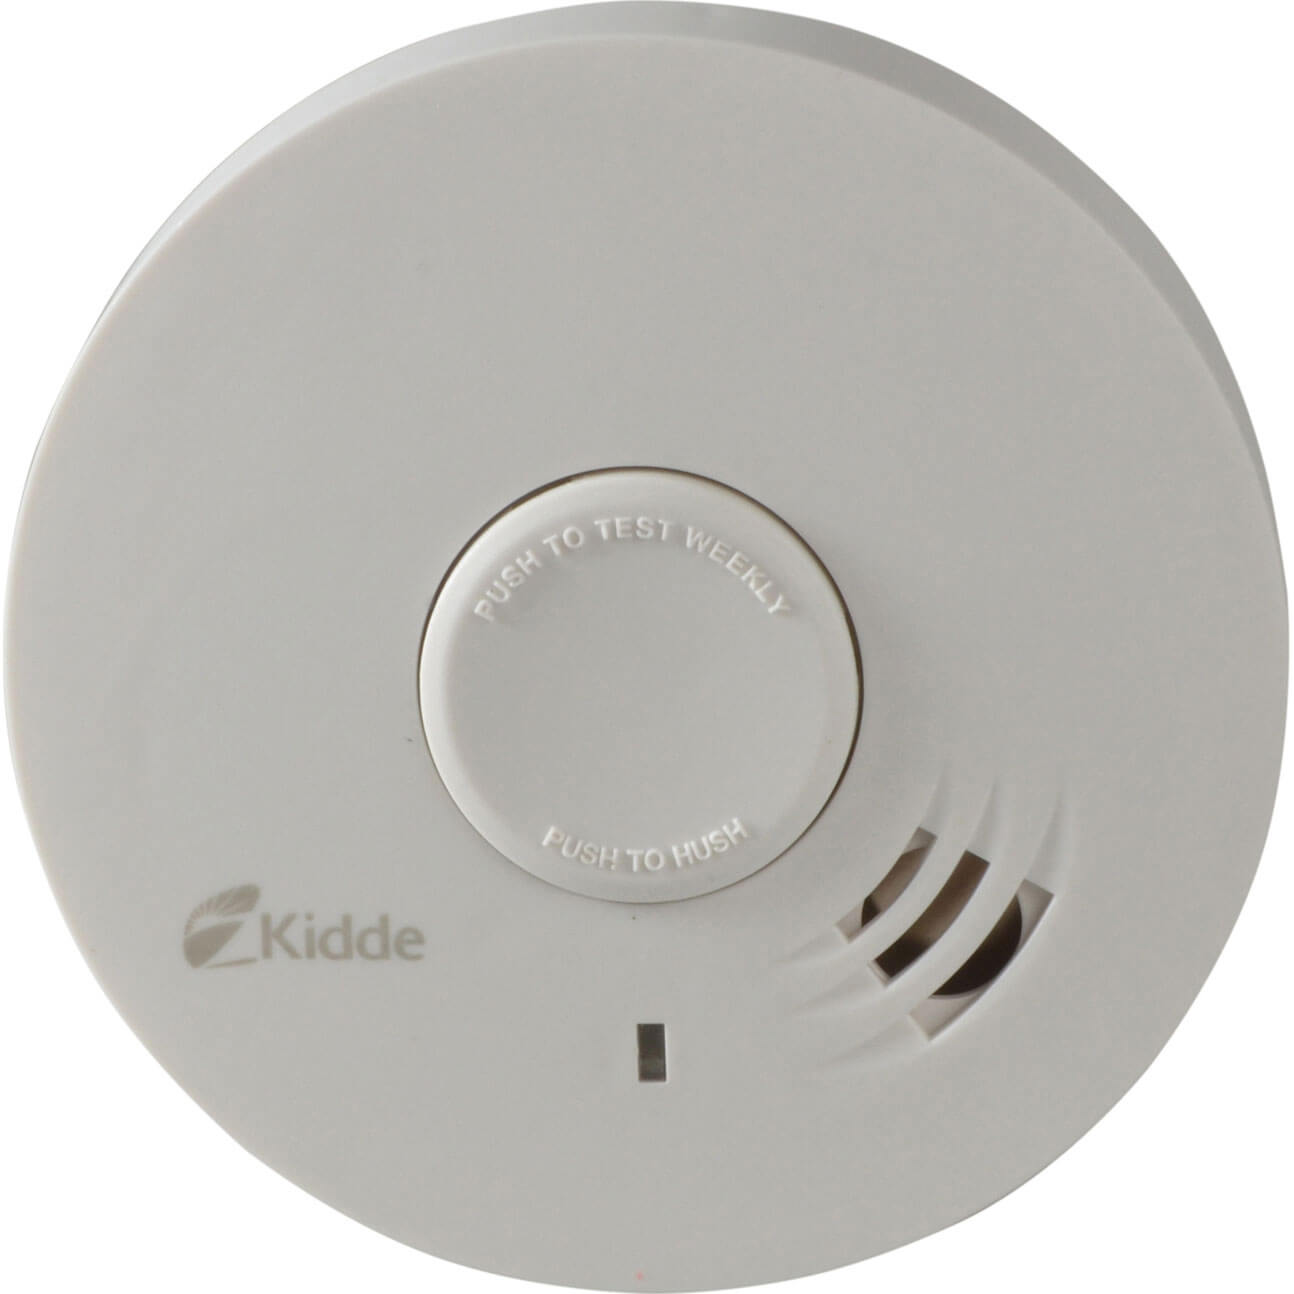 Image of Kidde 10 Year Optical Photoelectric Smoke Alarm